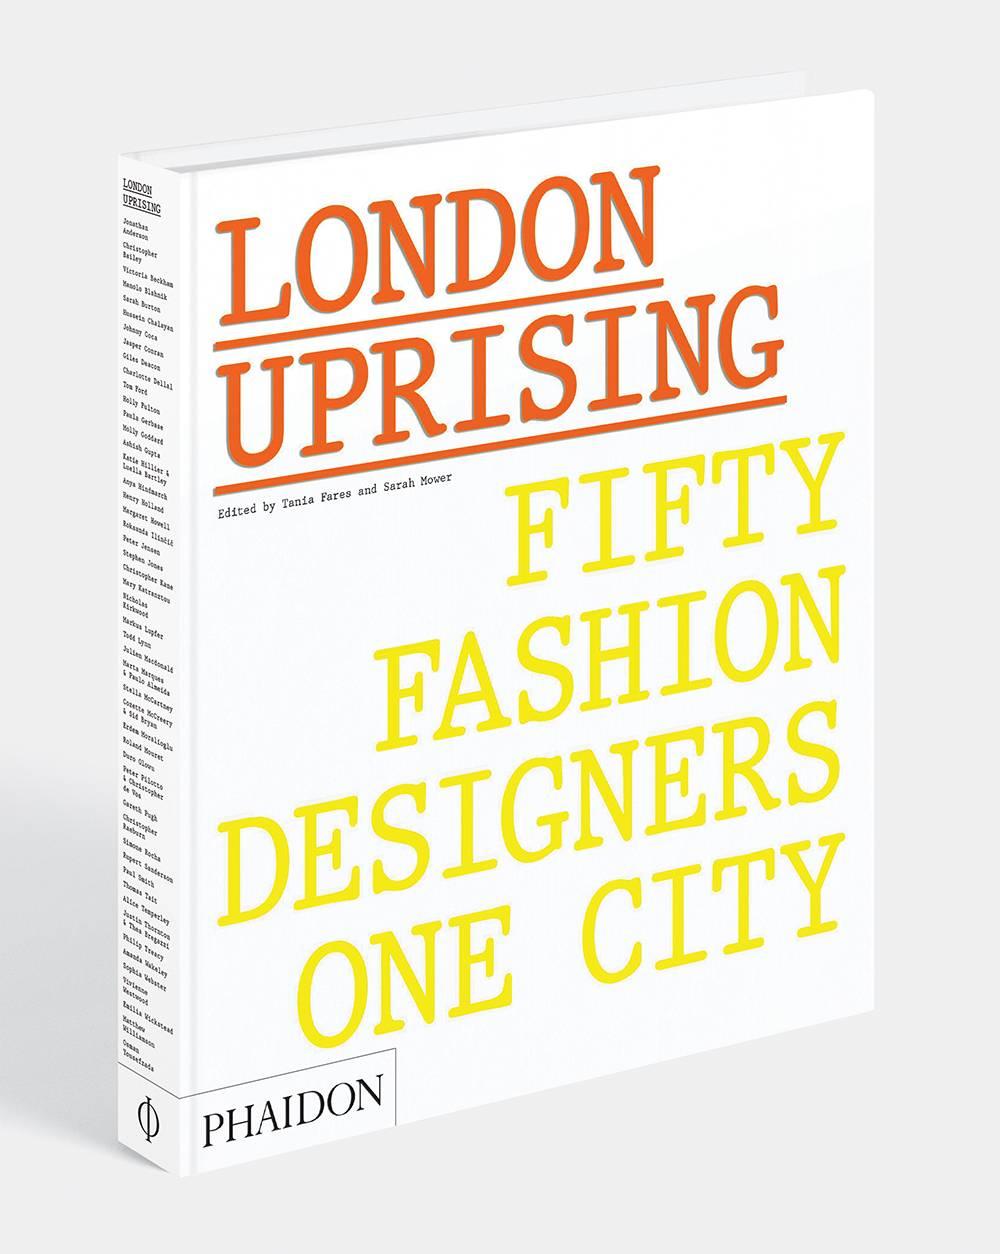 Papier London Uprising-Fifty Fashion Designers (Quatre créateurs de mode de Londres), livre unique en vente